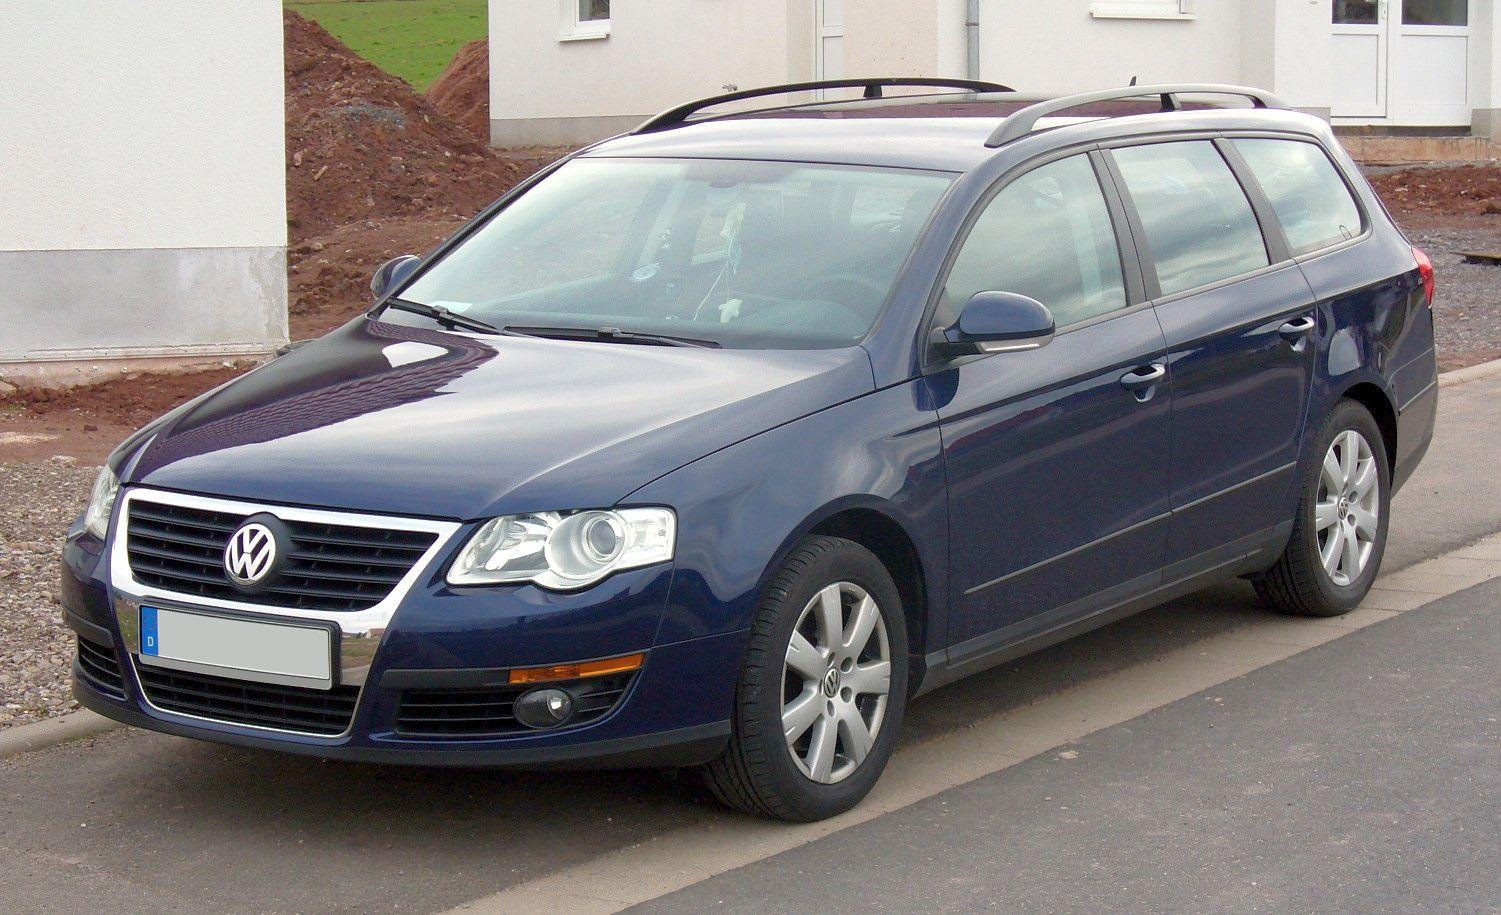 Пассат б6 купить бу. Фольксваген Пассат b6 универсал. Volkswagen Passat b6 variant. Volkswagen Passat variant (b6) 2008. Фольксваген ПСАДА б6 универсал.